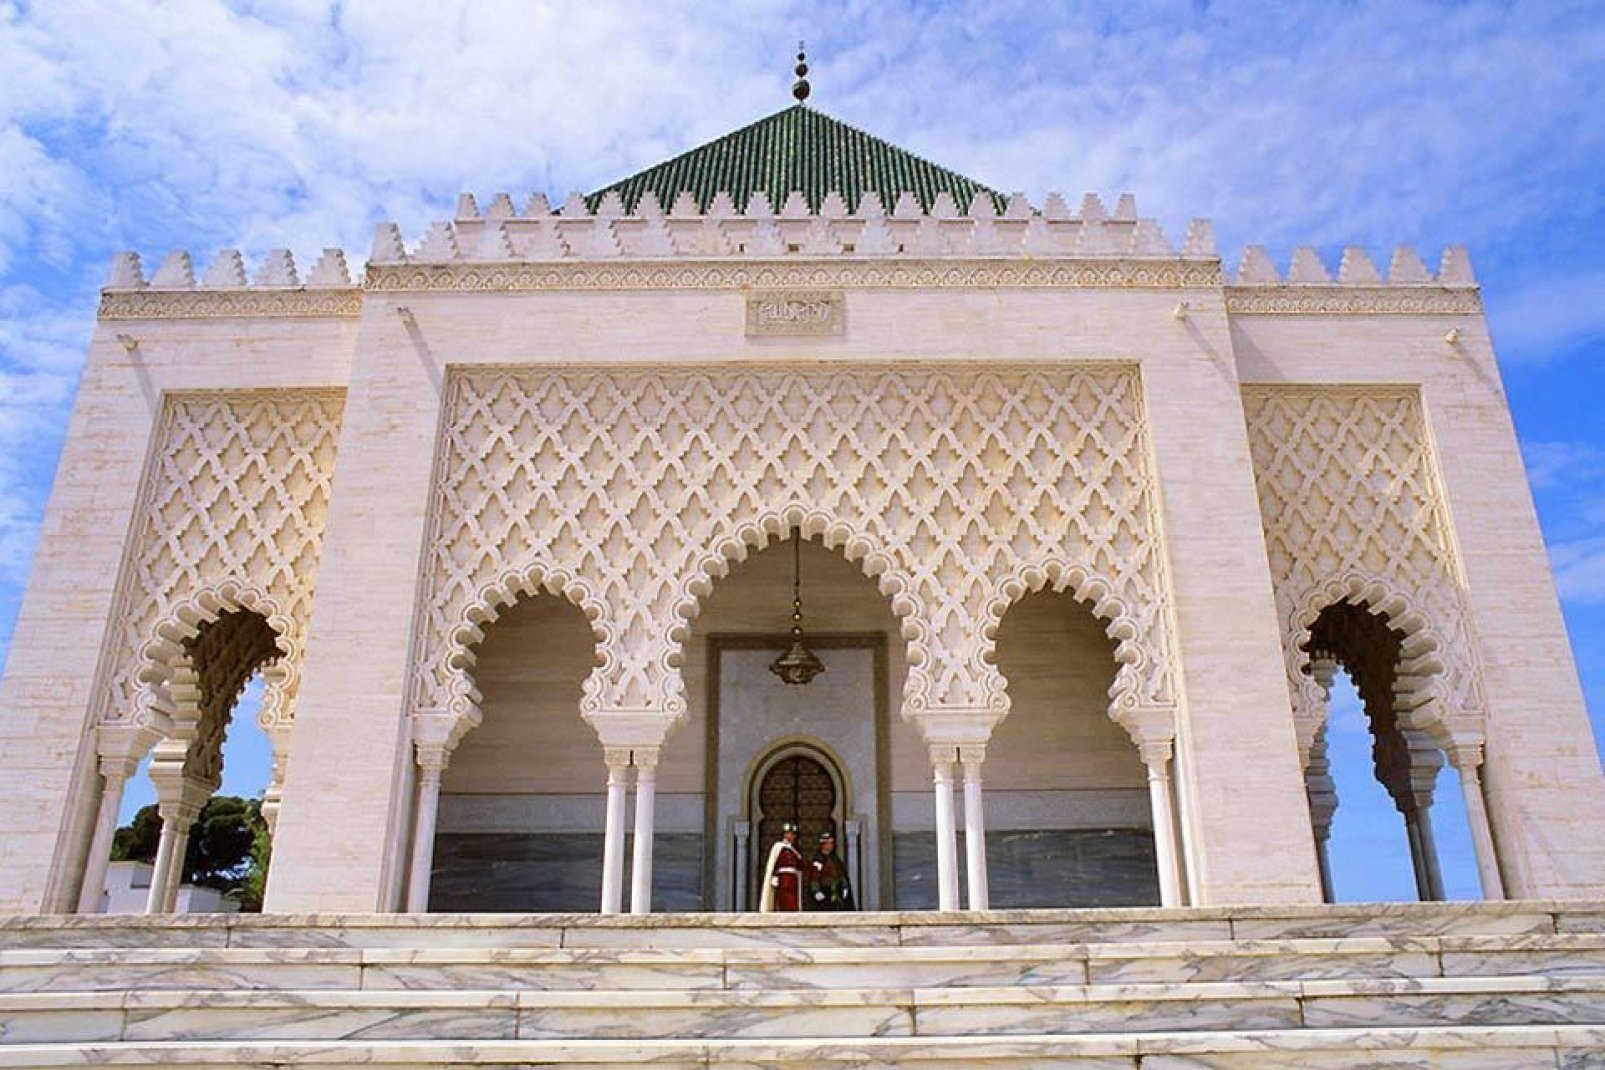 Lieu de culte, abritant le tombeau du pére de l'indépendance, le sultan Mohammed v, le mausolée du même nom tout de marbre et de zelliges en impose